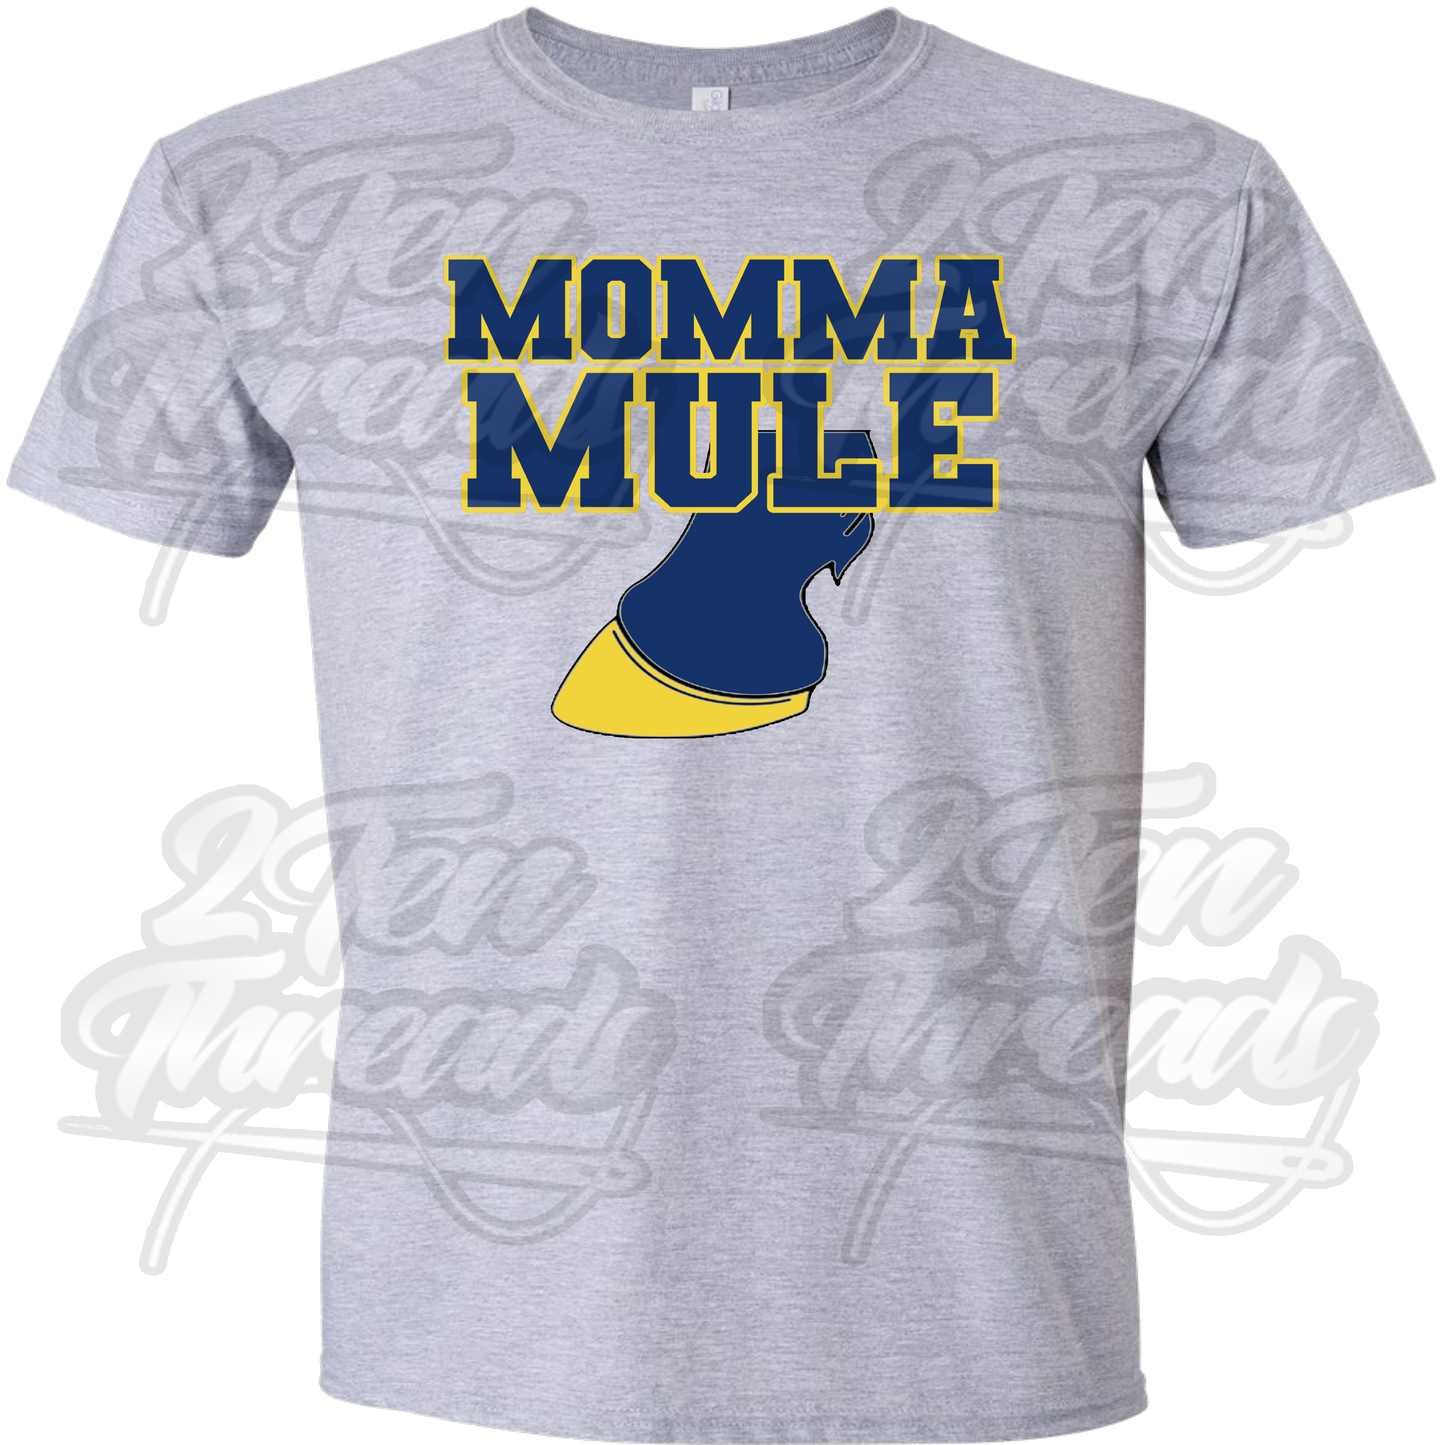 Momma Mule!